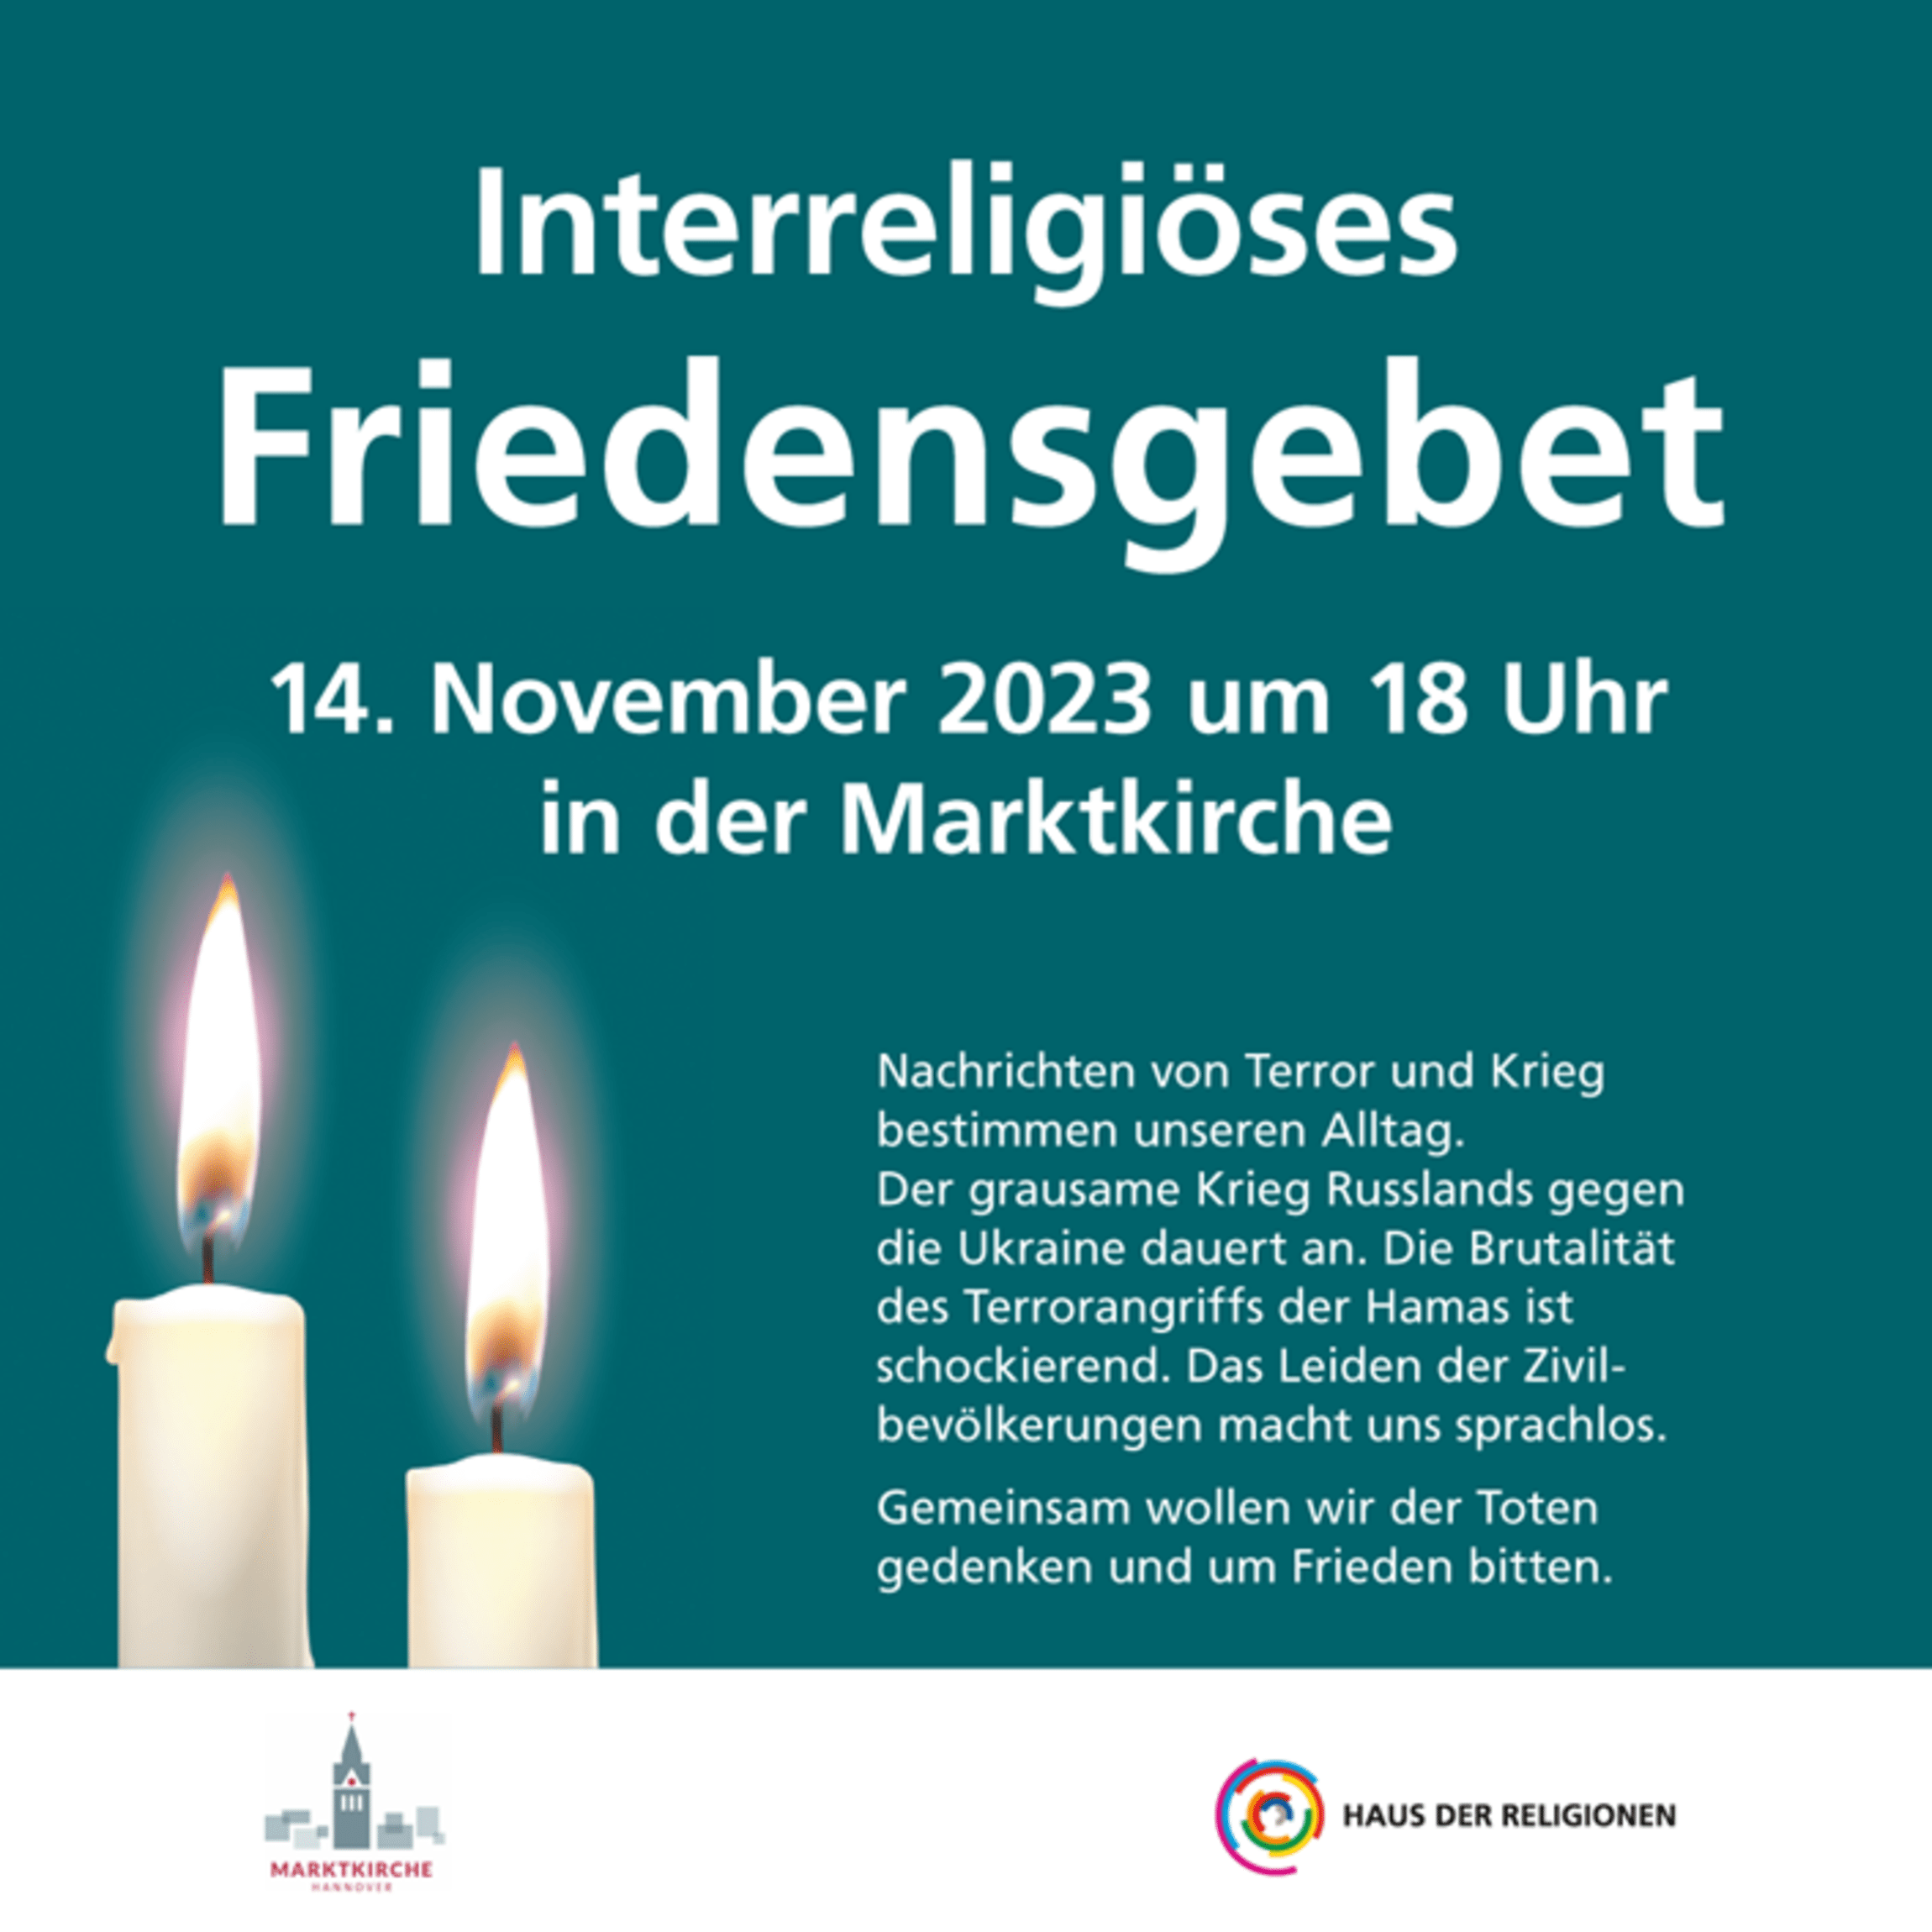 Interreligiöses Friedensgebet in der Marktkirche